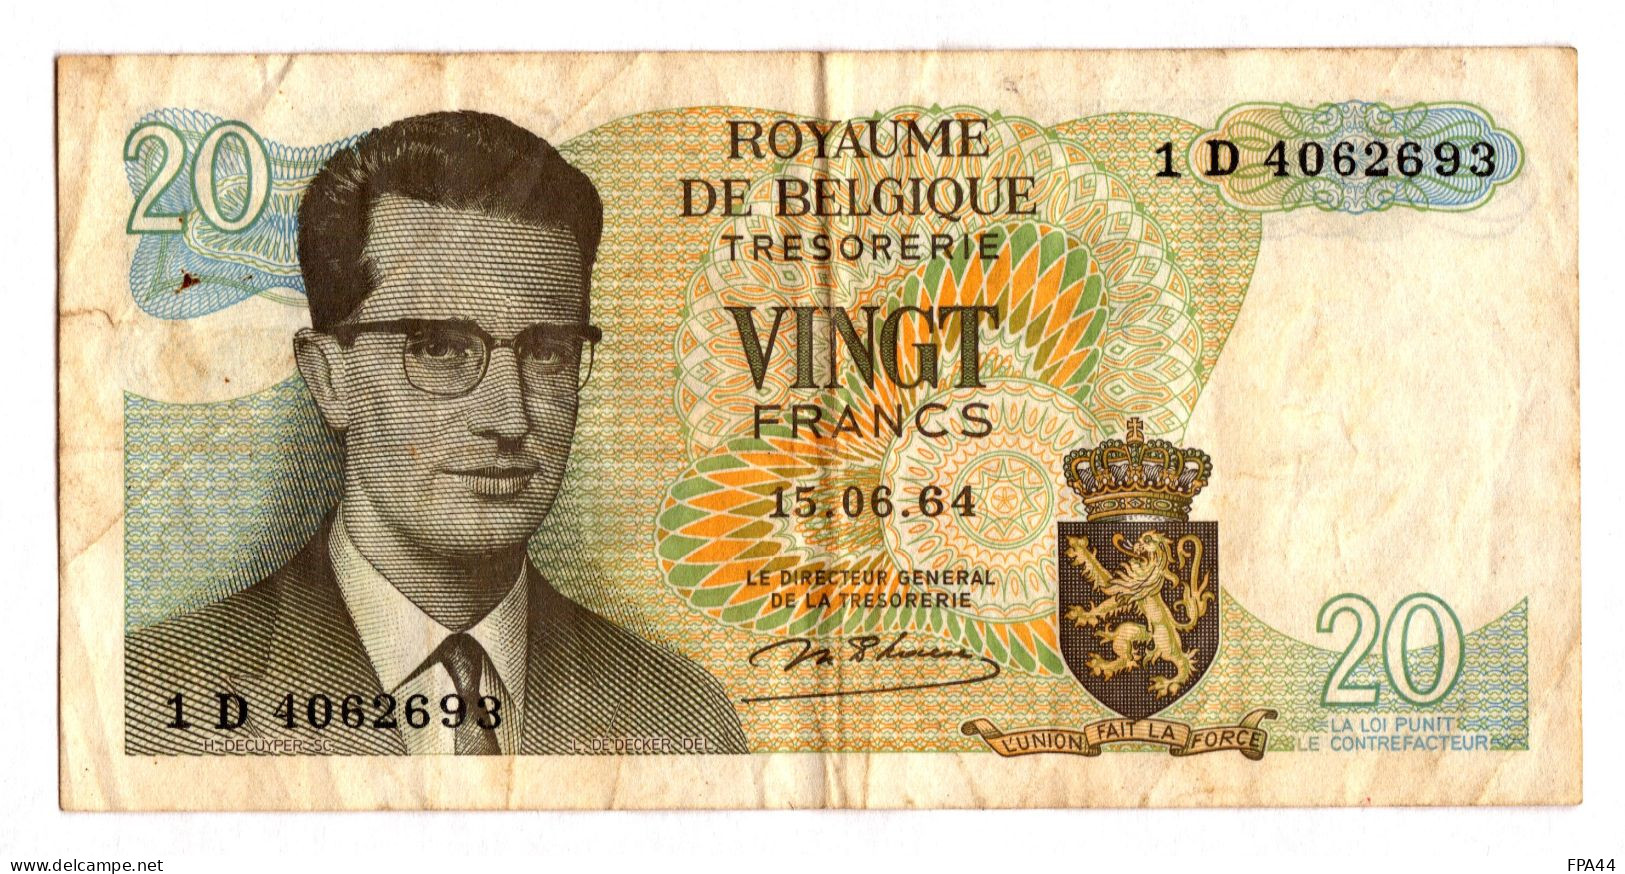 BELGIQUE   20 FRANCS BELGES  15.06.64 ROYAUME DE BELGIQUE - 20 Francos